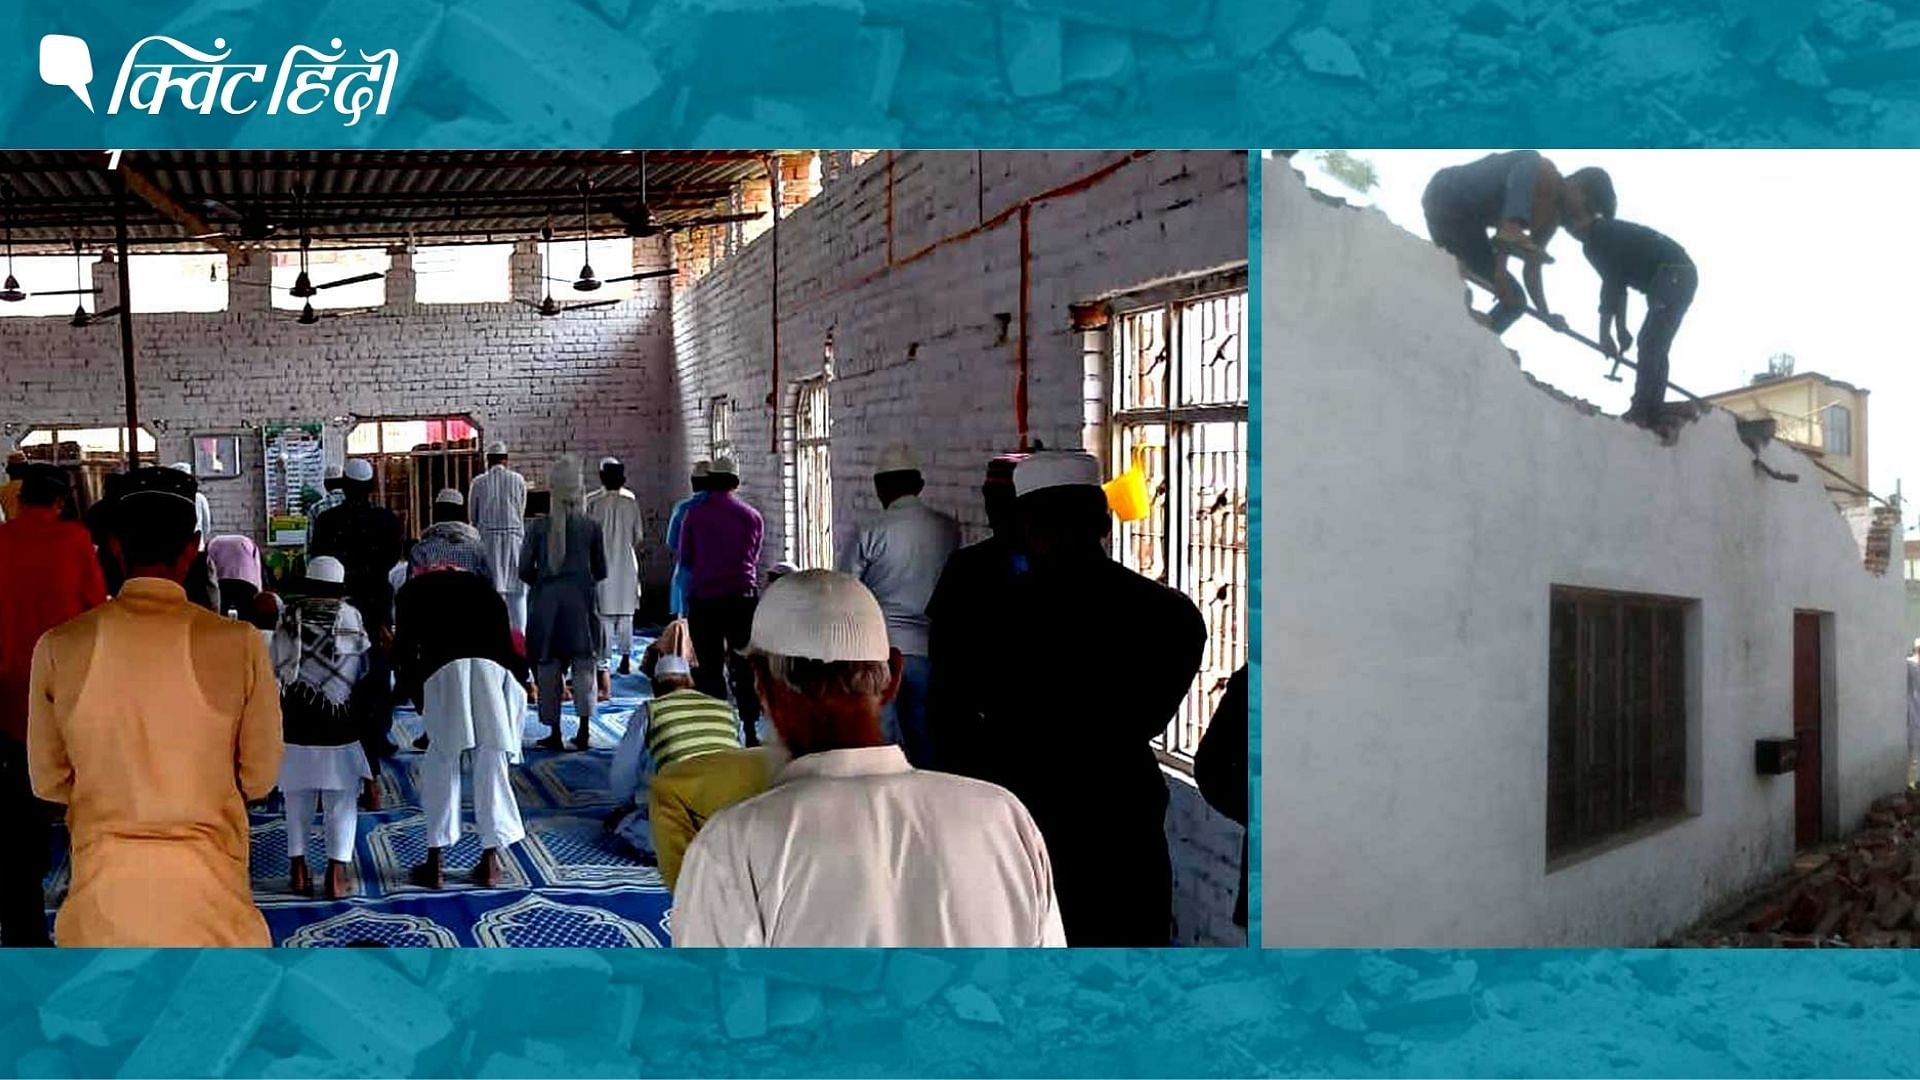 <div class="paragraphs"><p>मुजफ्फरनगर में 23 मई को स्थानीय लोगों ने खुद गिरायी थी मस्जिद&nbsp;</p></div>